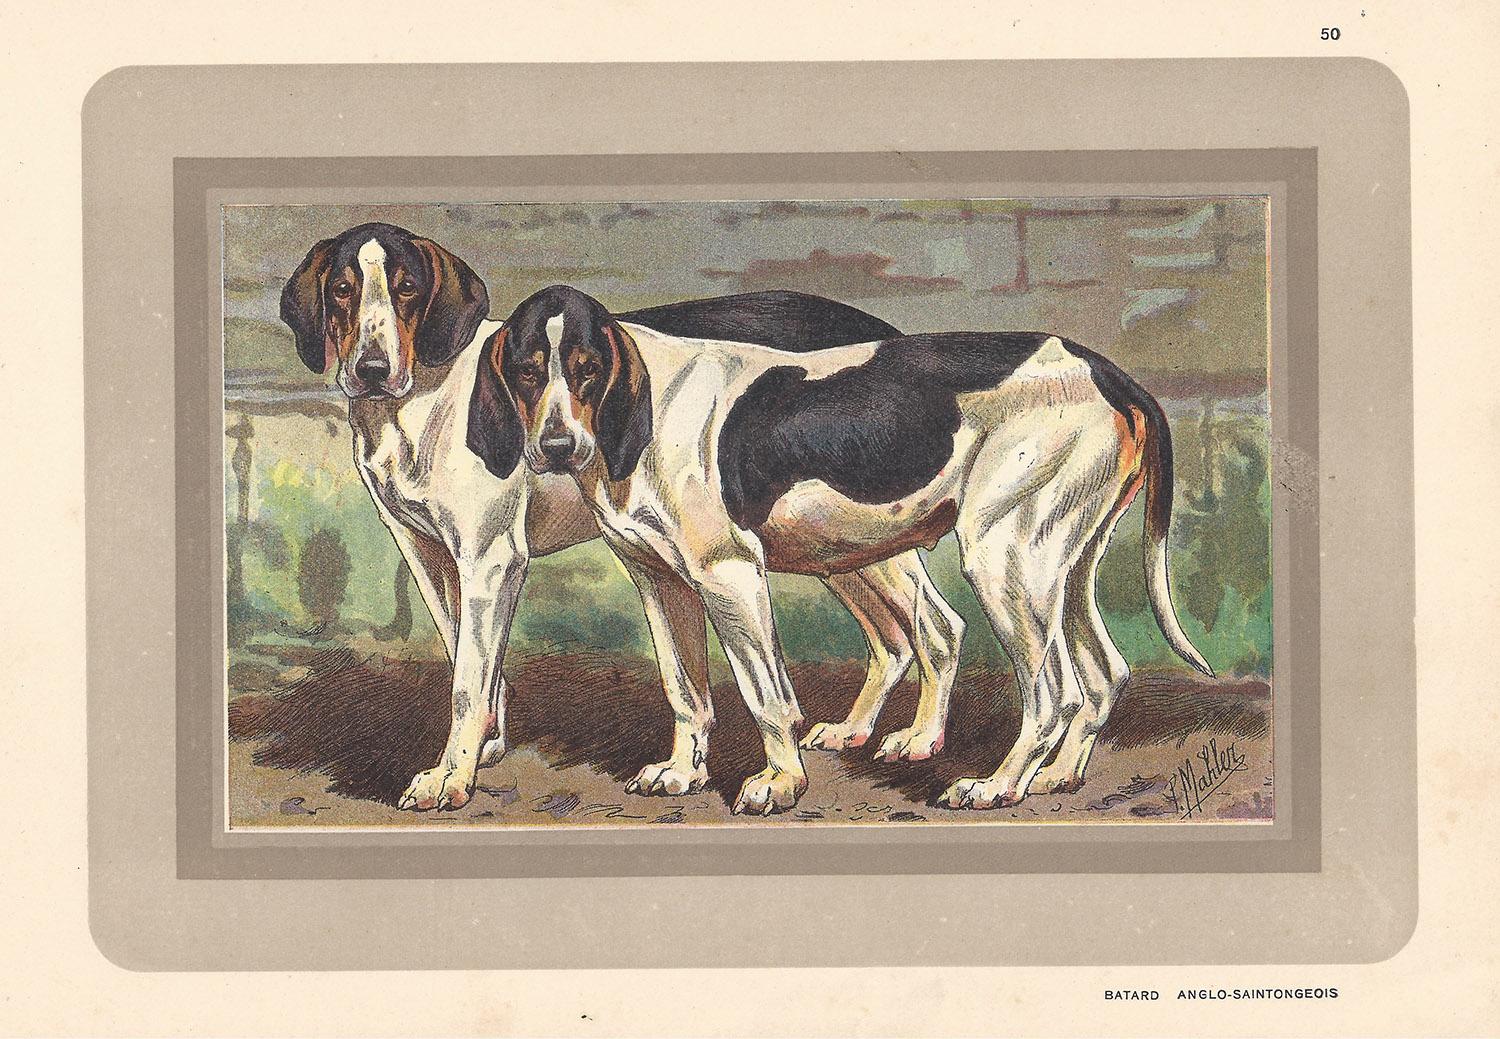 P. Mahler Animal Print - Batard Anglo-Saintongeois, French hound, dog chromolithograph, 1930s